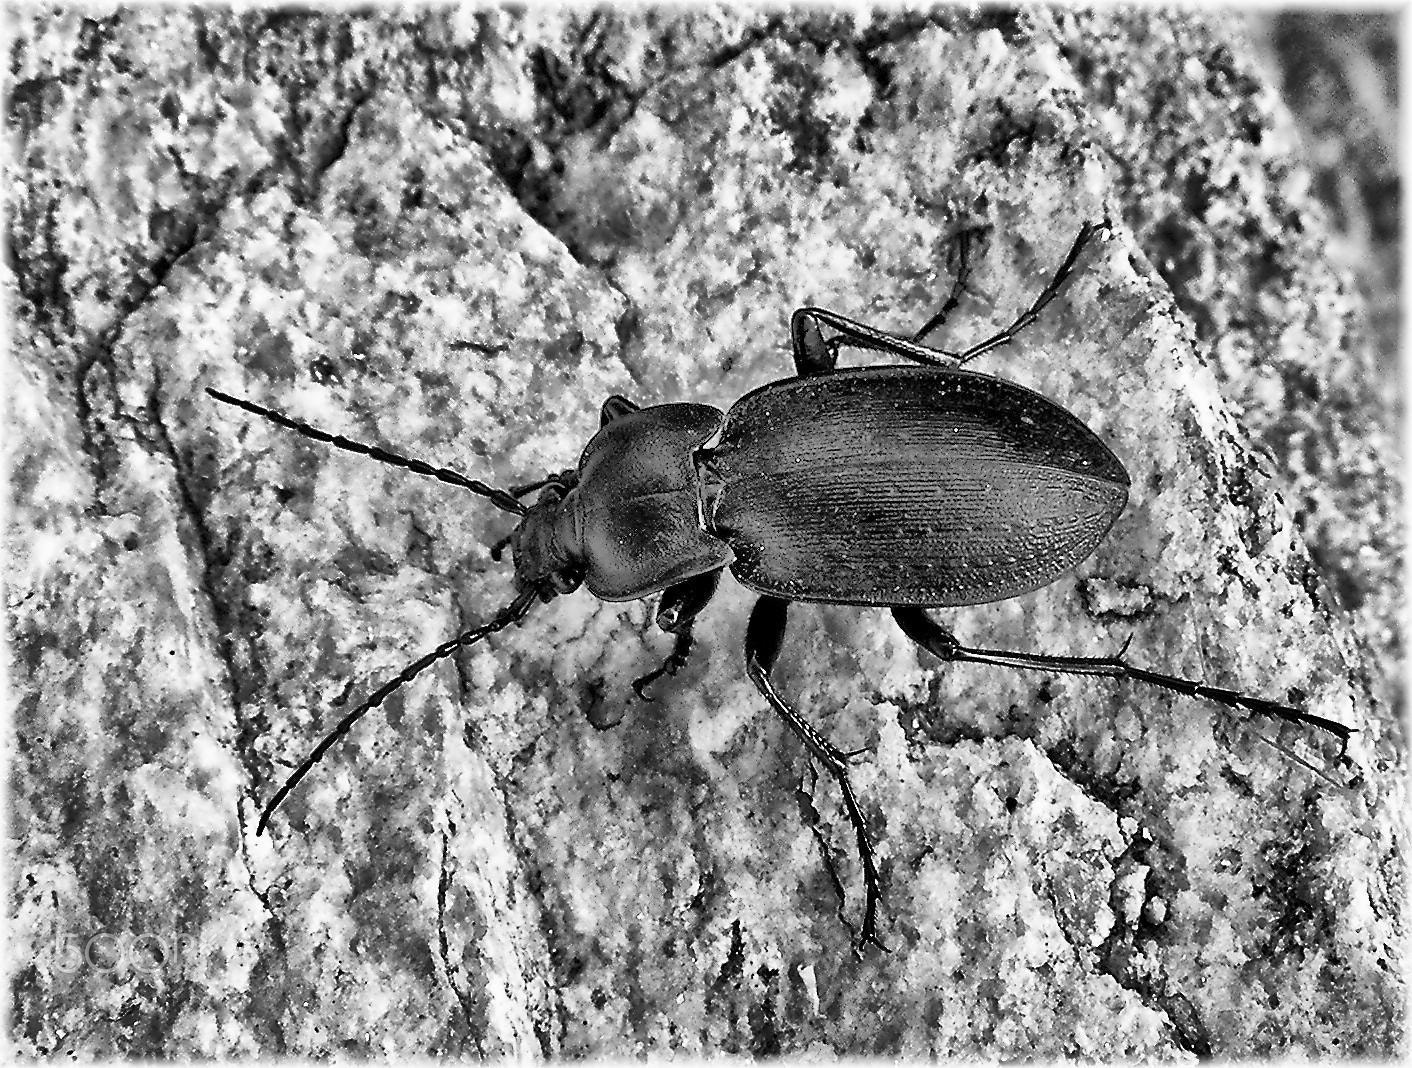 Nikon COOLPIX S4 sample photo. Escarabajo photography